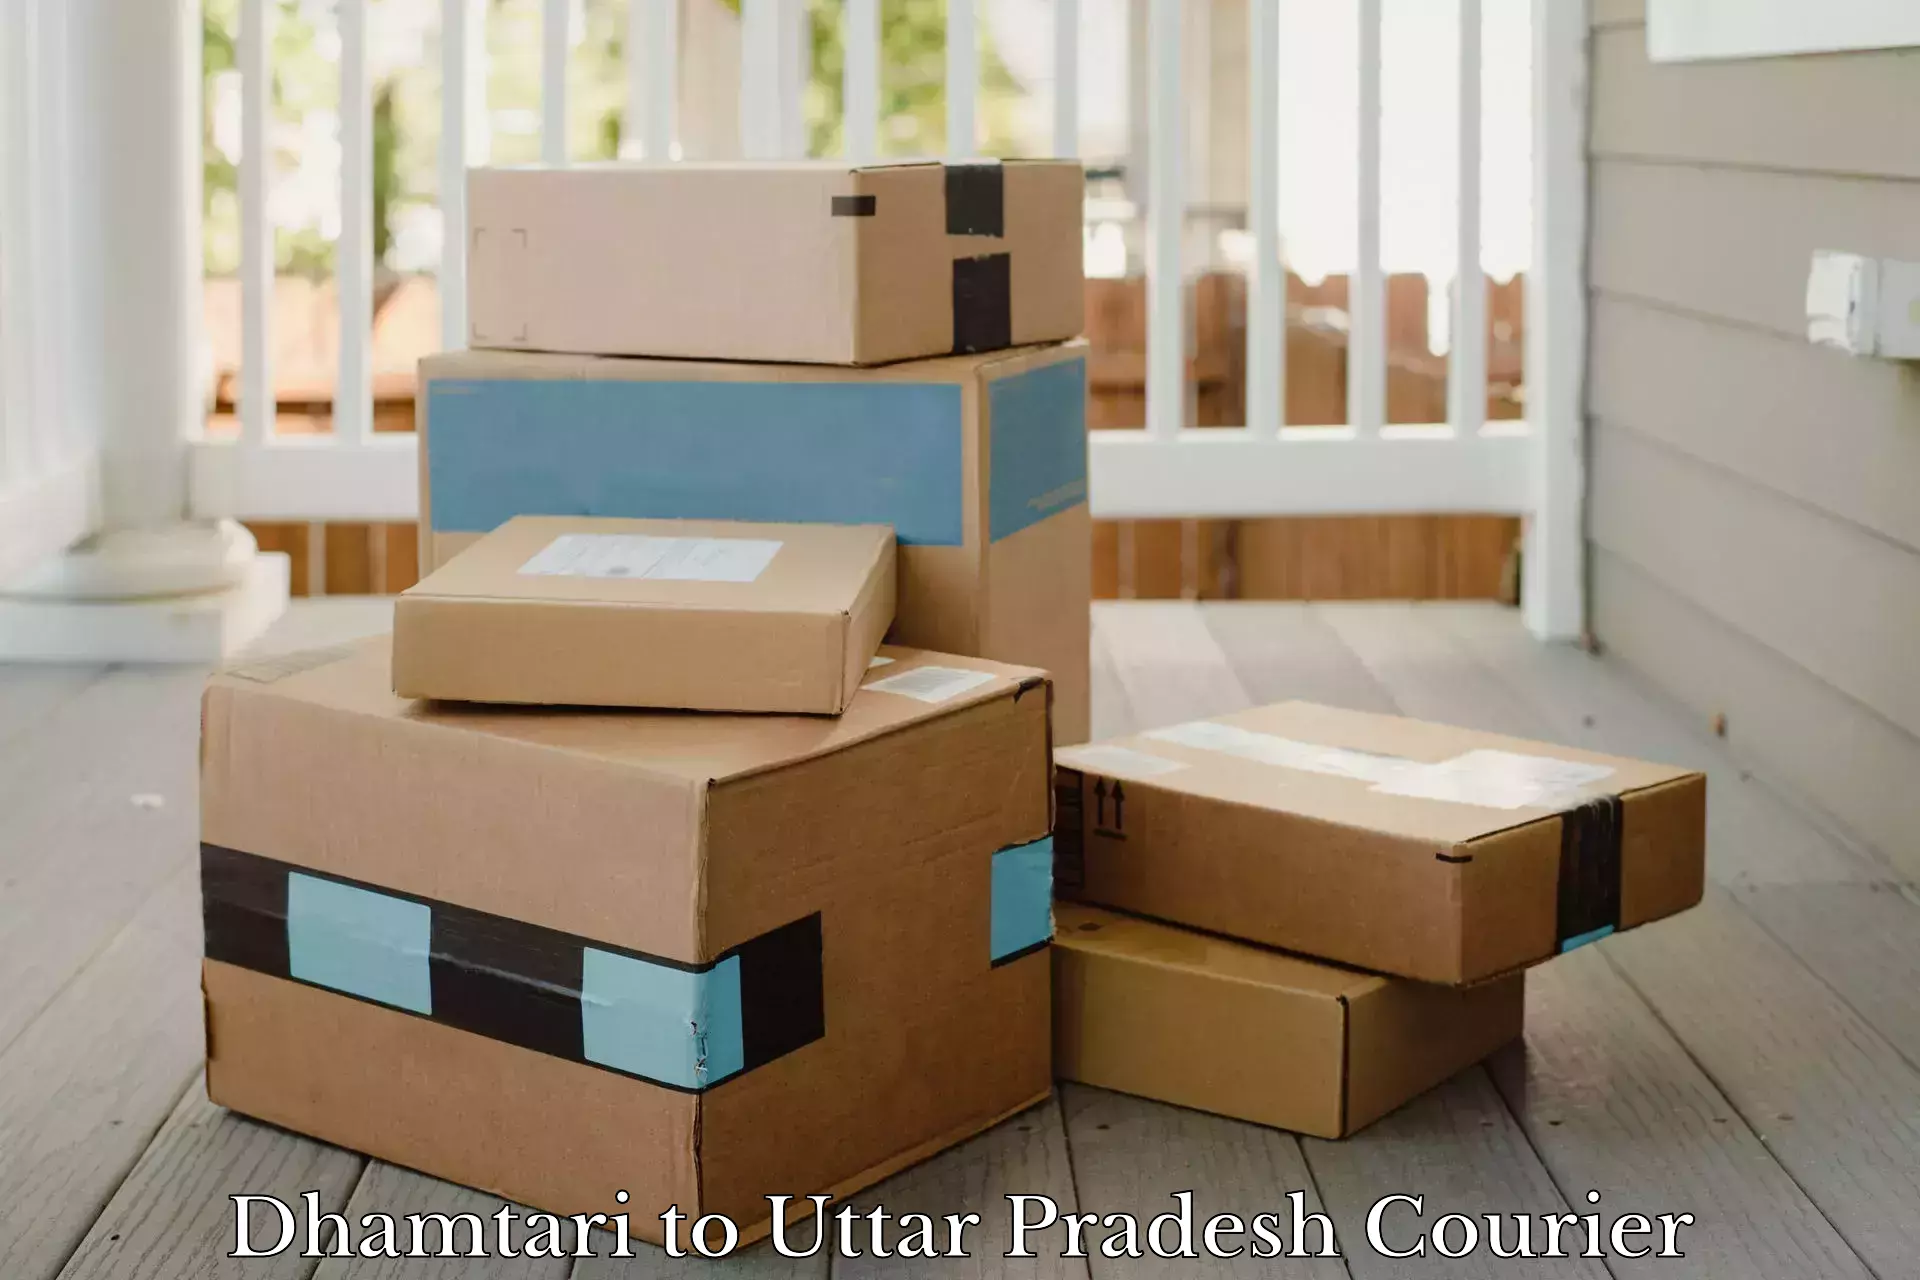 Customer-centric shipping Dhamtari to Uttar Pradesh